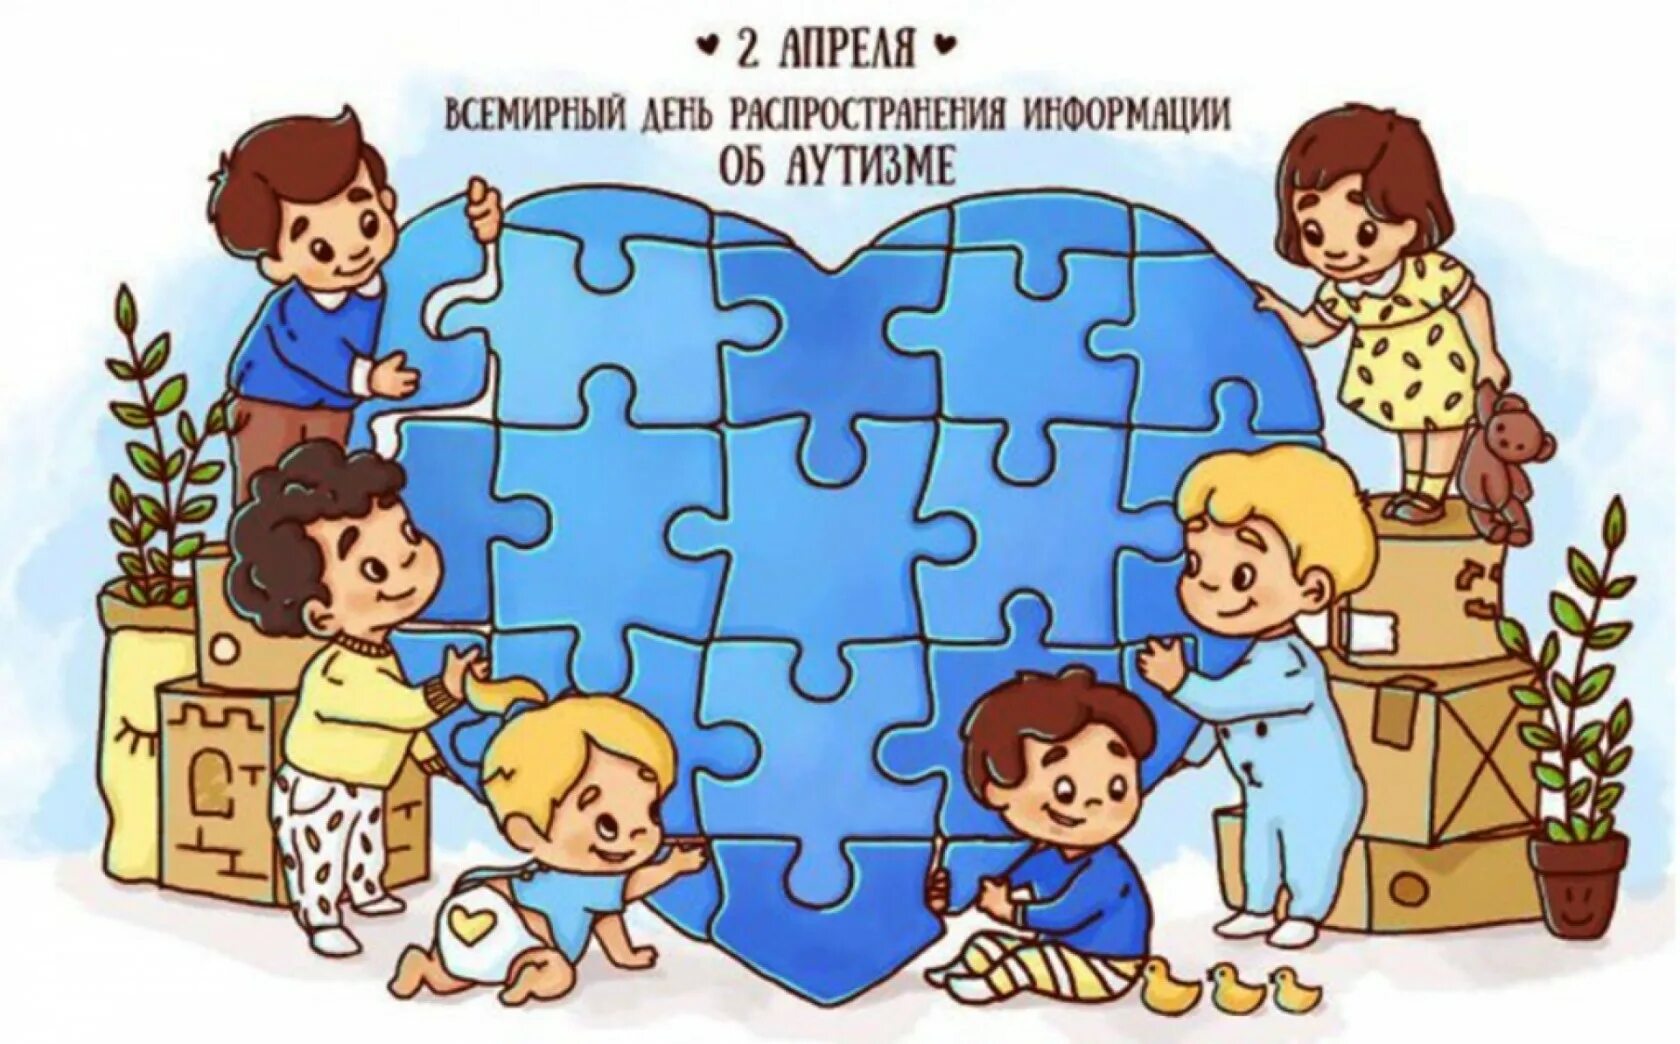 Распространение информации об аутизме. Всемирный день аутизма. Всемирный день распространения информации о проблеме аутизма. Аутизм рисунки. Всемирный день информирования об аутизме